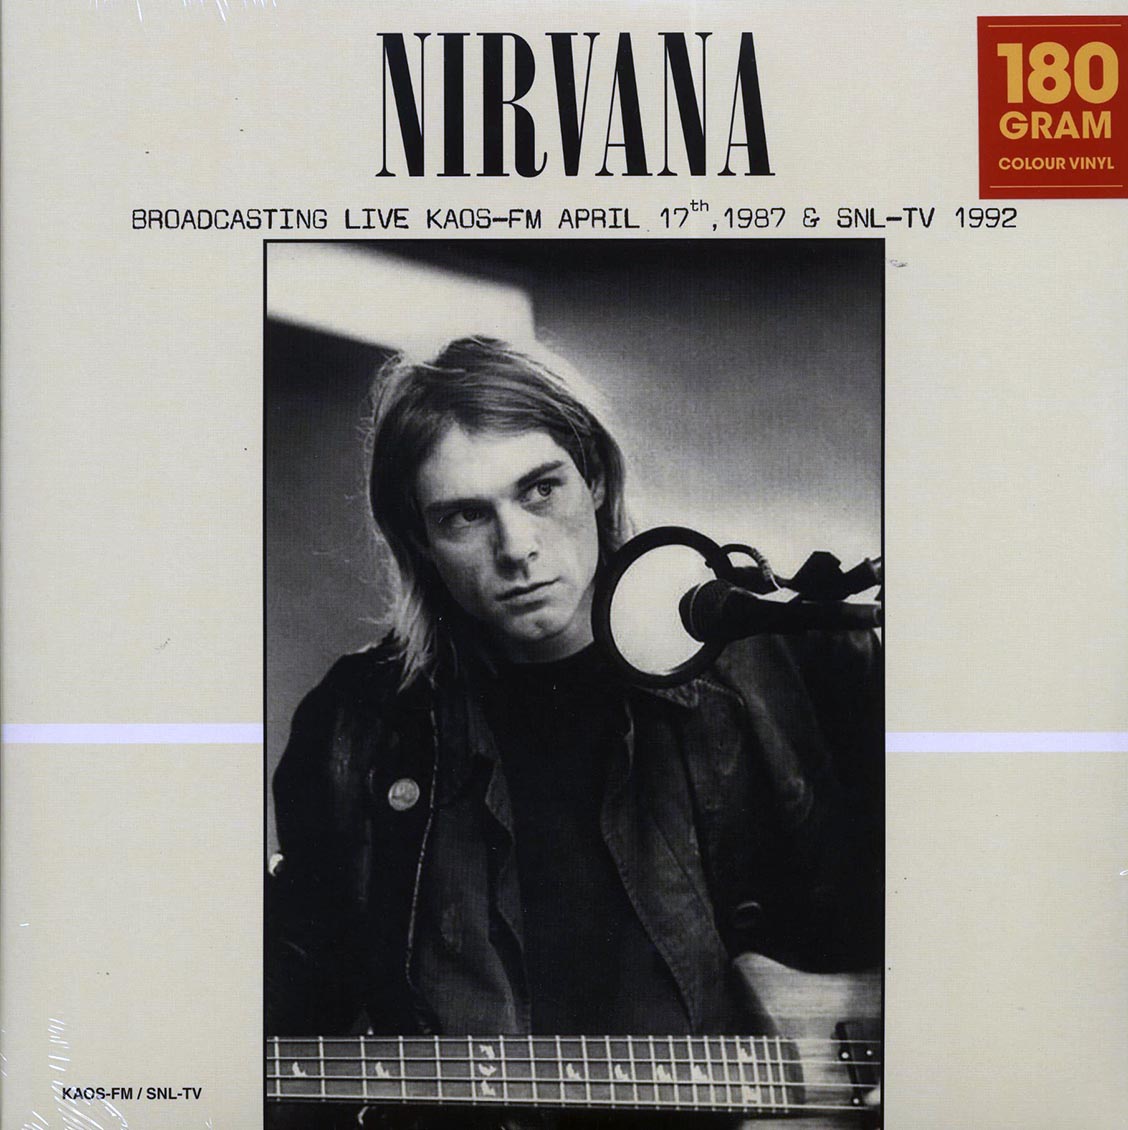 Nirvana - Broadcasting Live KAOS-FM April 17th, 1987 & SNL-TV 1992